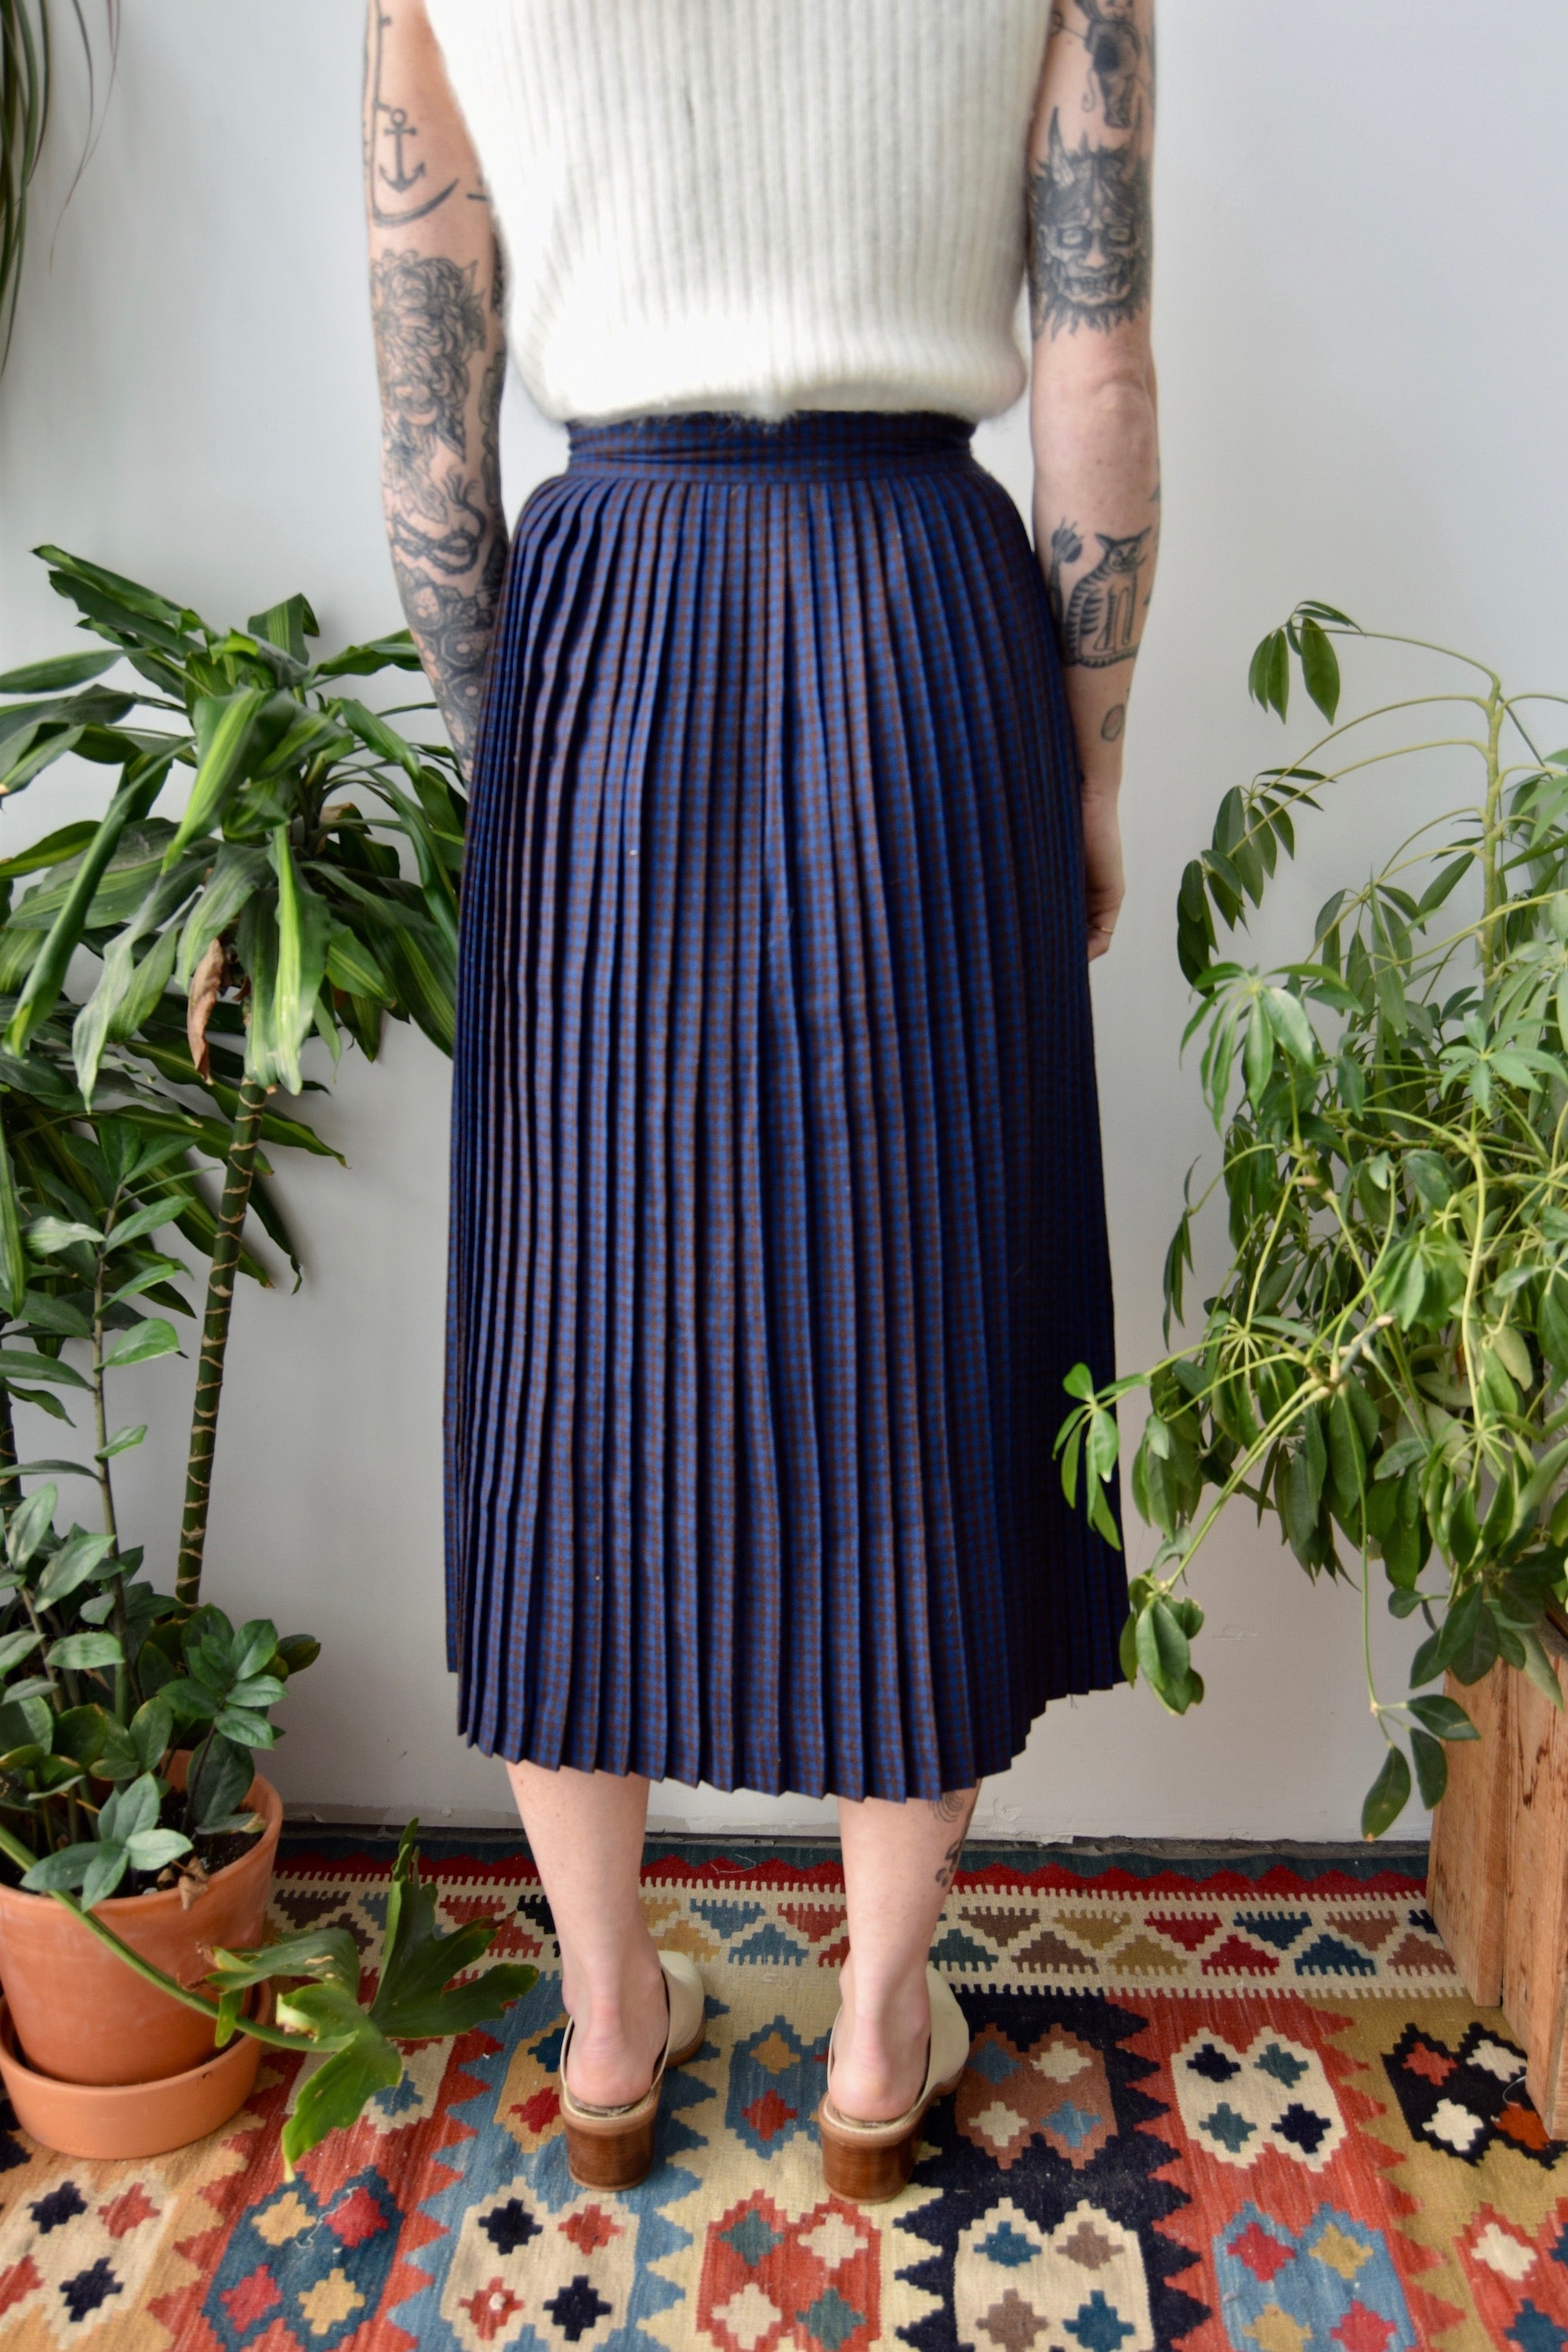 Vintage Wool Pleated Skirt